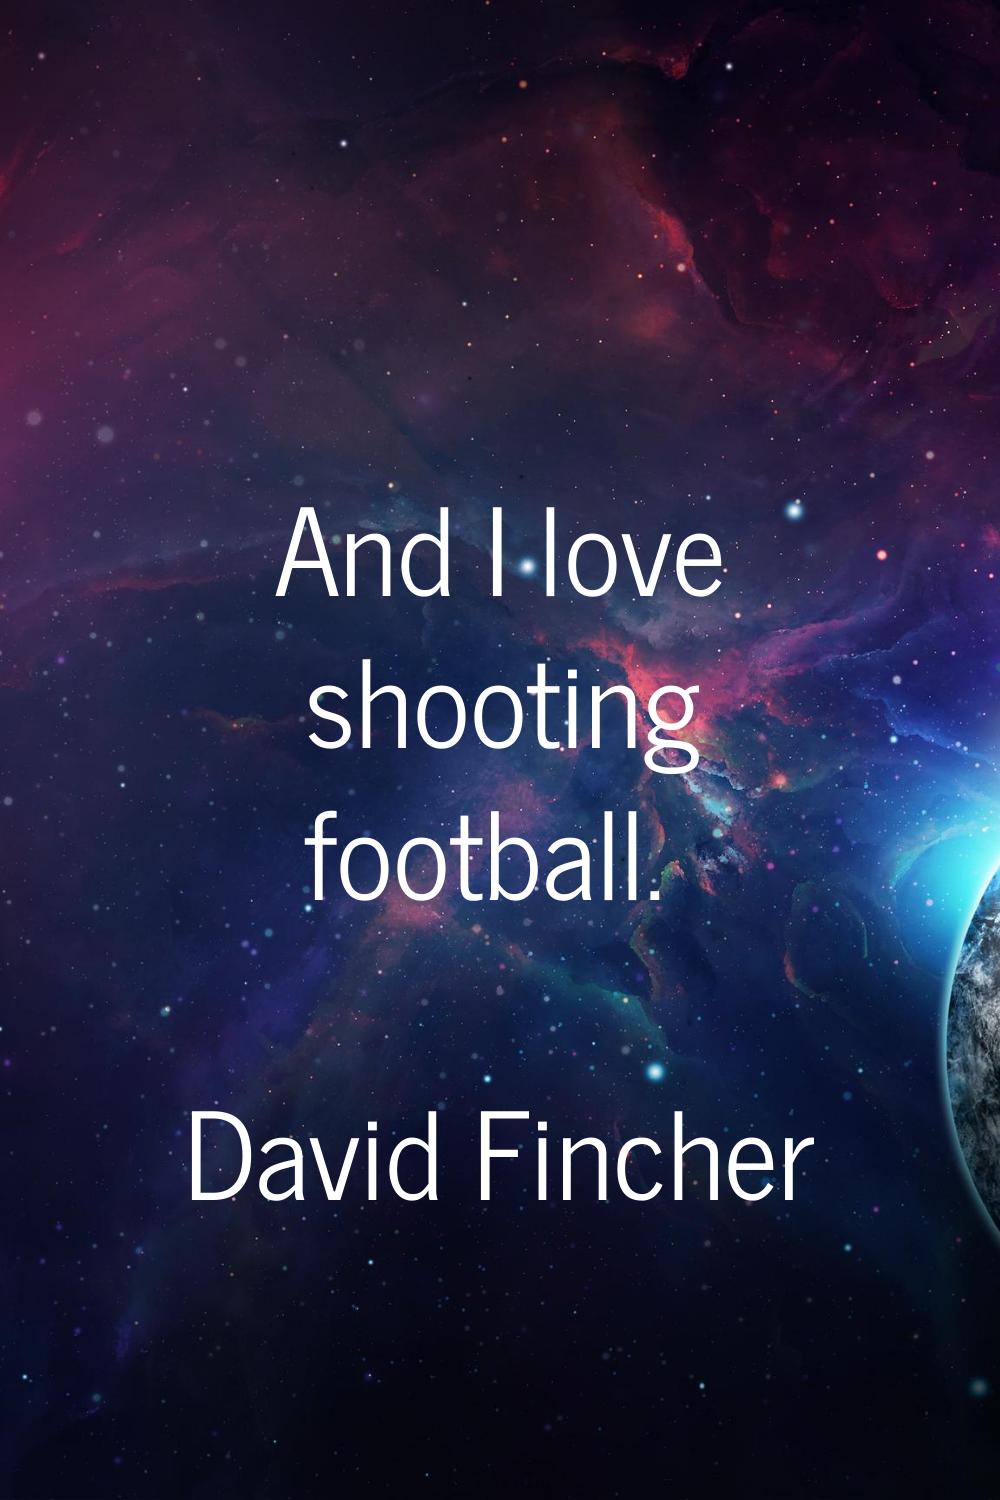 And I love shooting football.